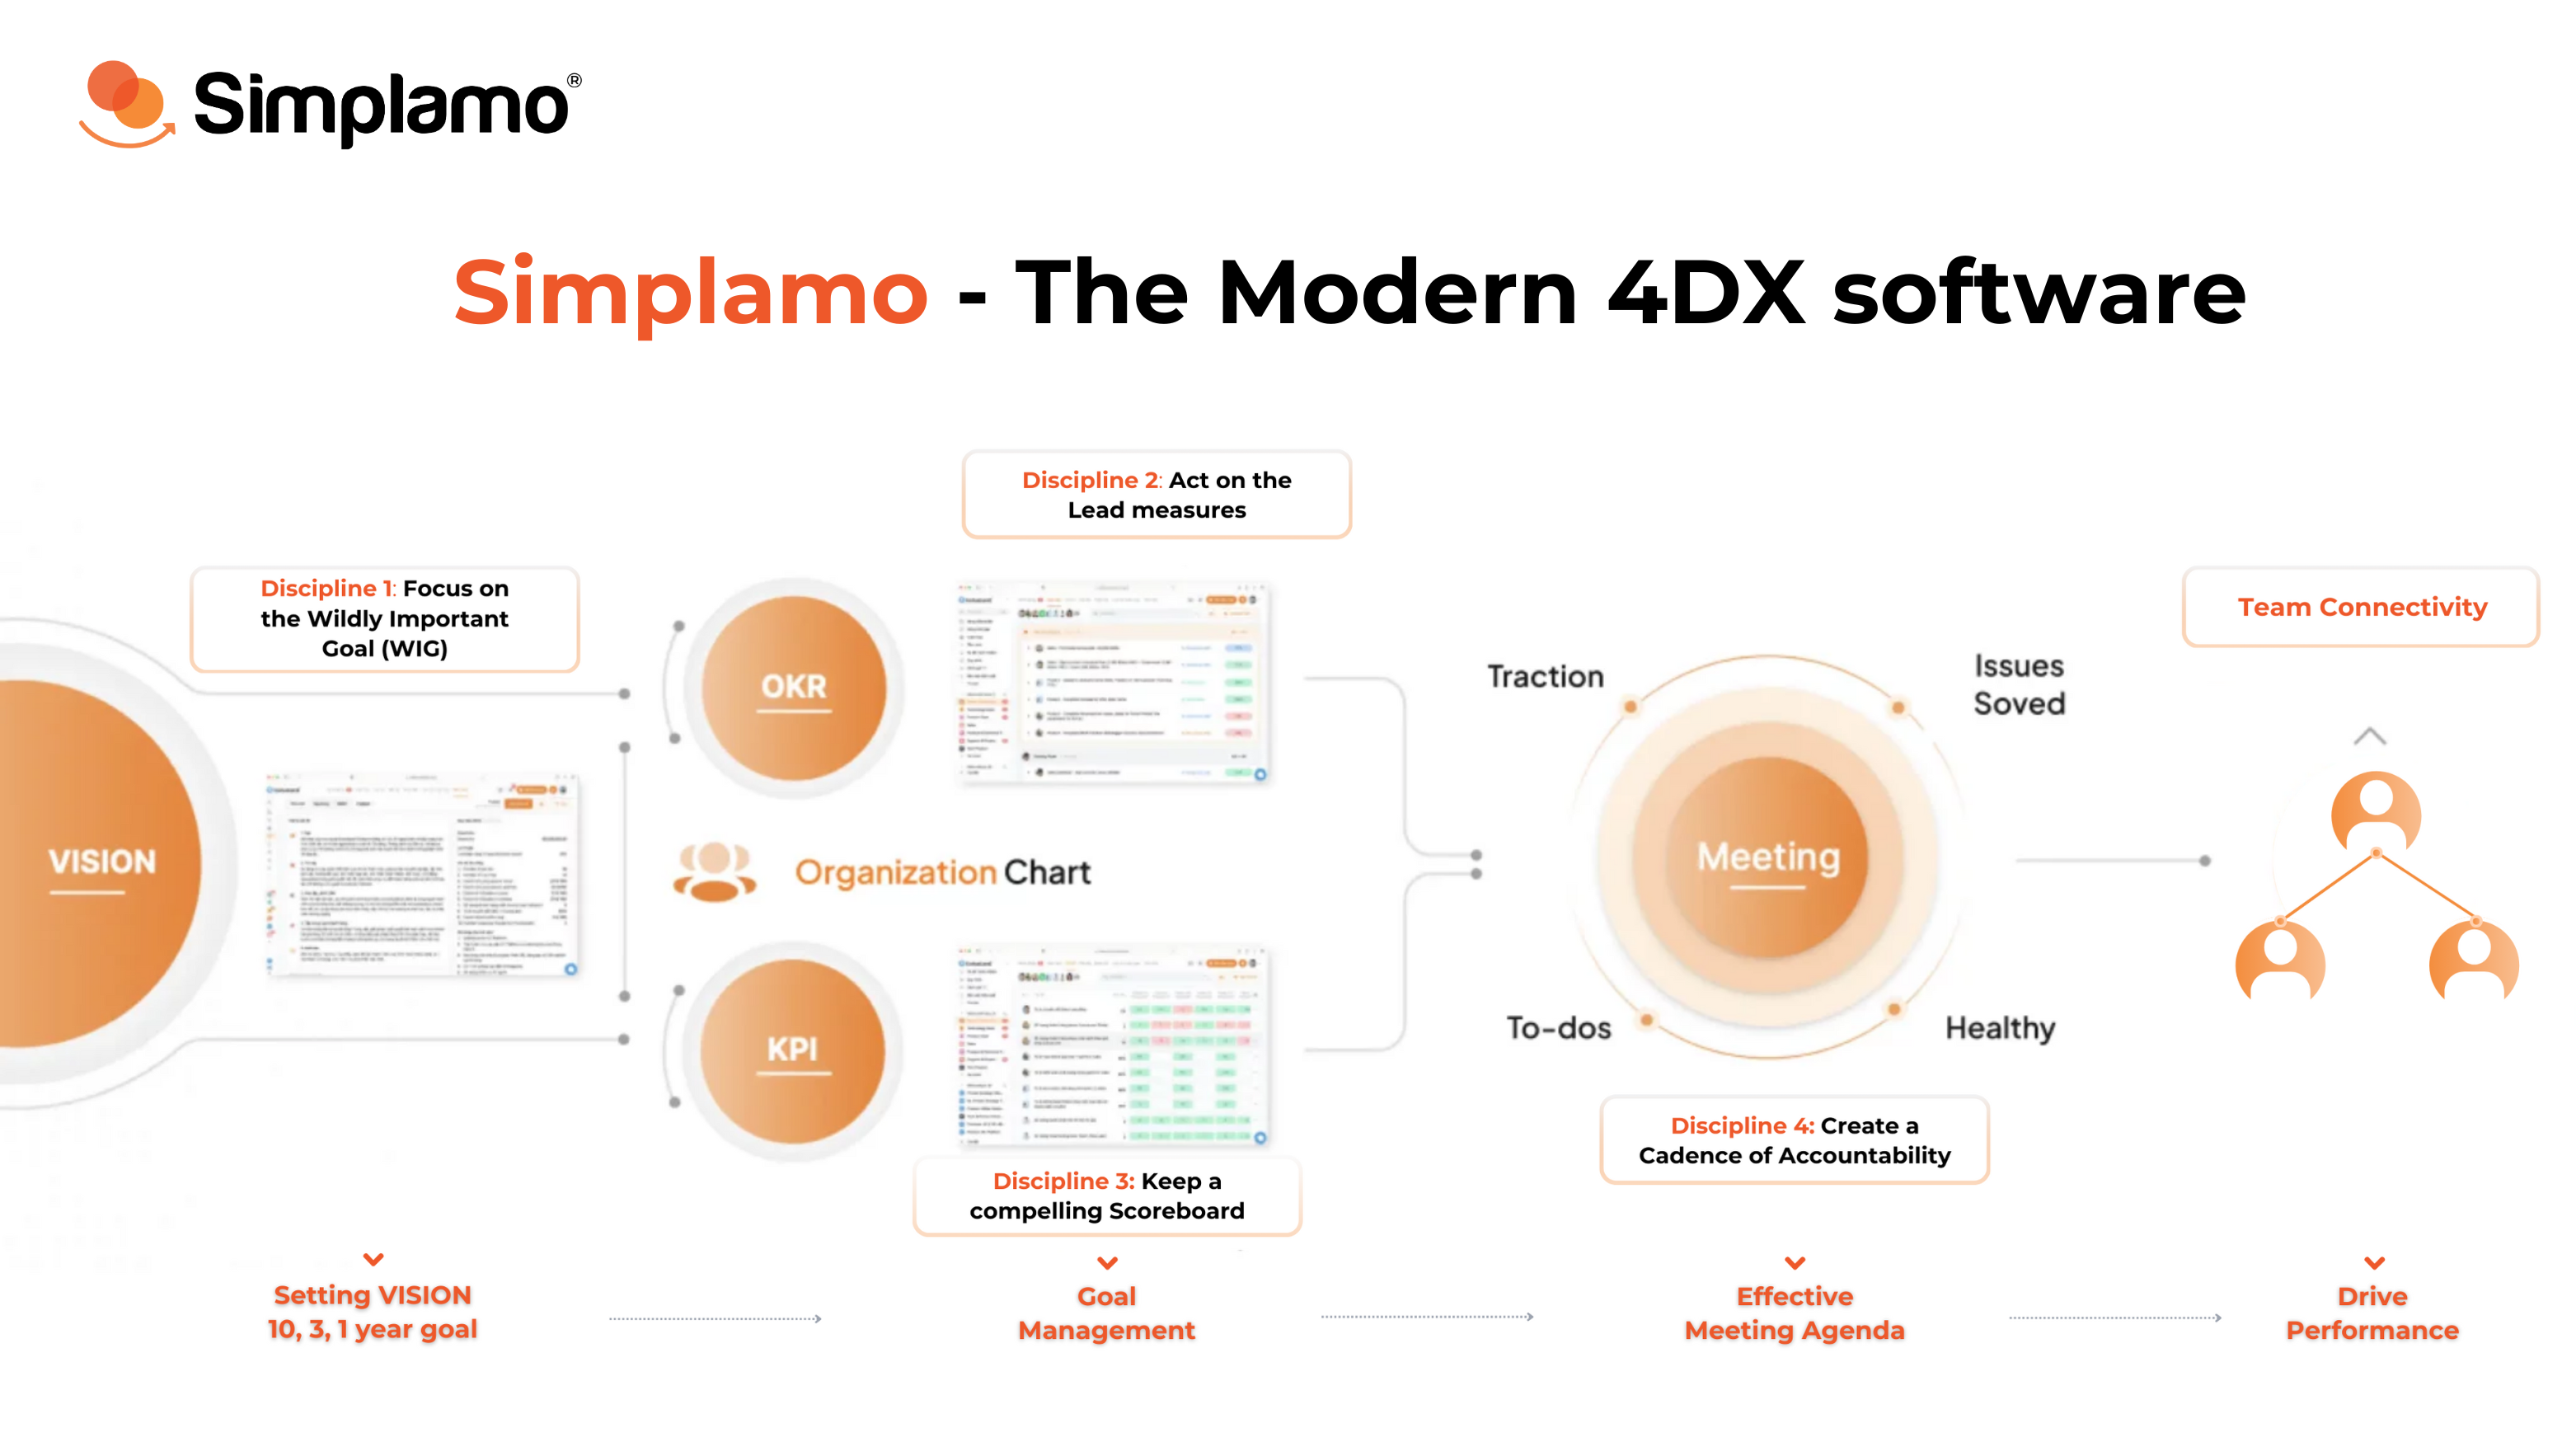 Simplamo - The Modern 4DX software